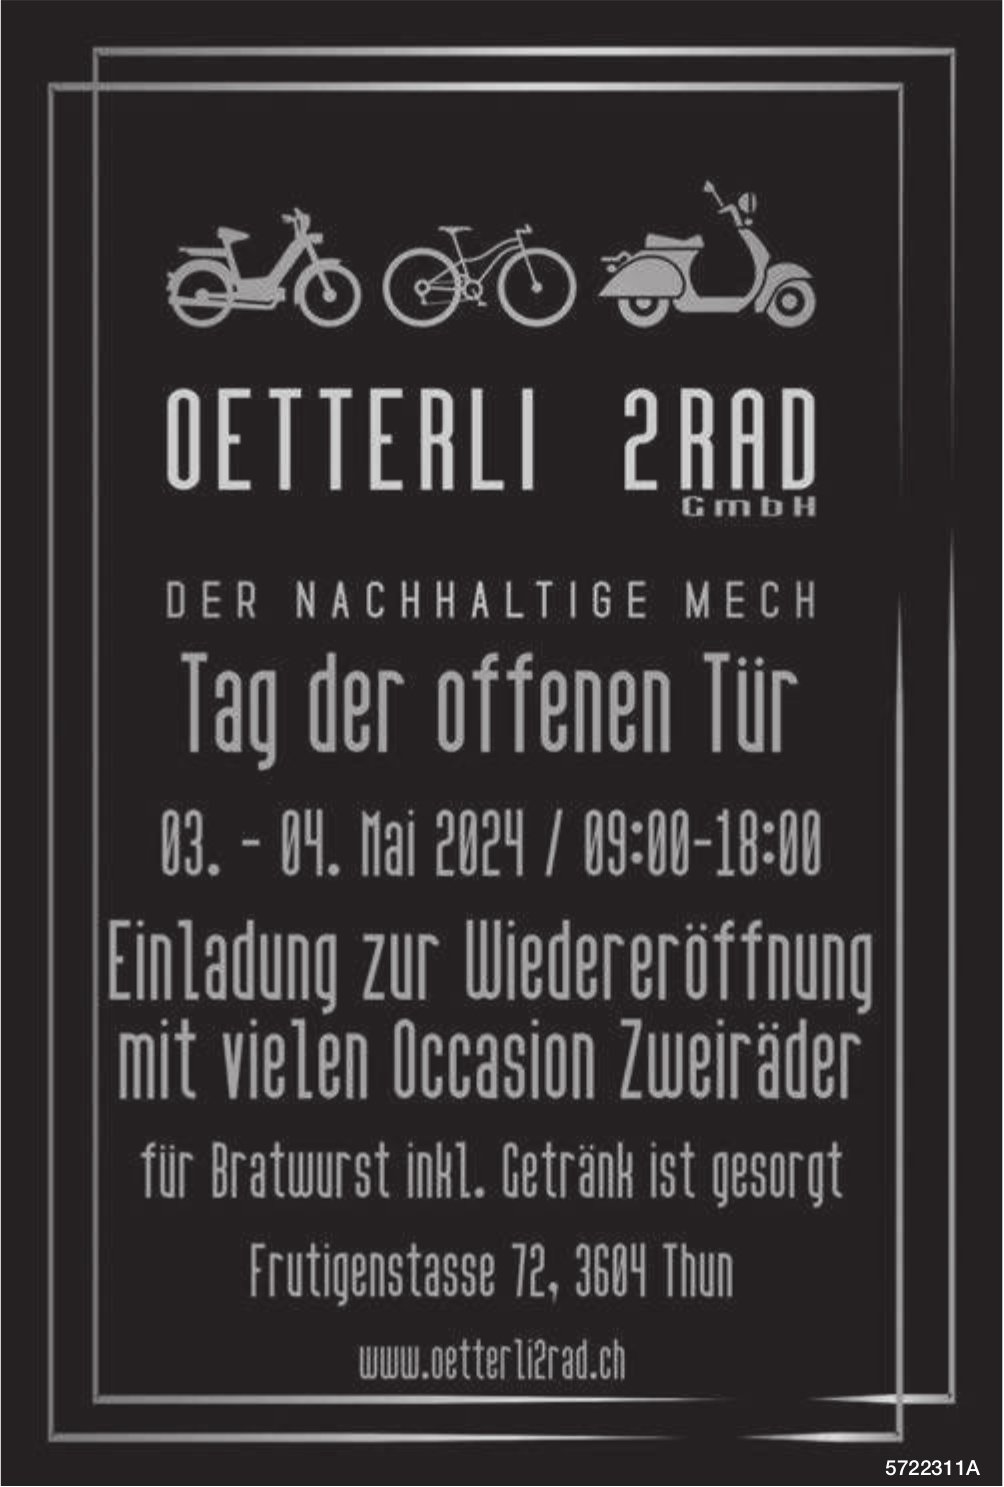 Tag der offenen Tür, 03./04. Mai, Oetterli 2Rad GmbH, Thun